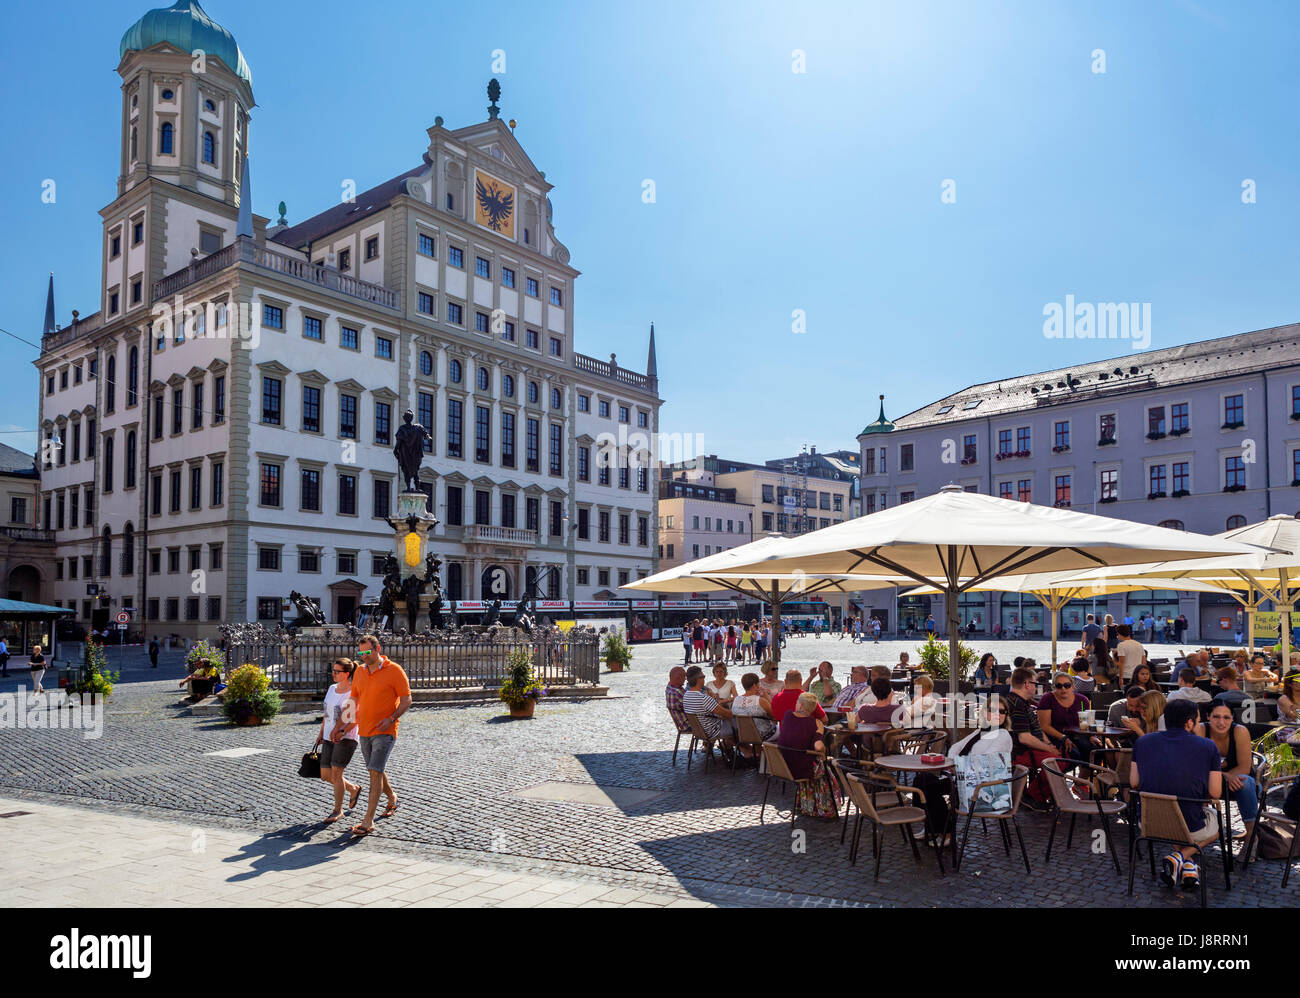 Café-terrasse en face de l'hôtel de ville (Rathaus), Rathausplatz, Augsbourg, Bavière, Allemagne Banque D'Images